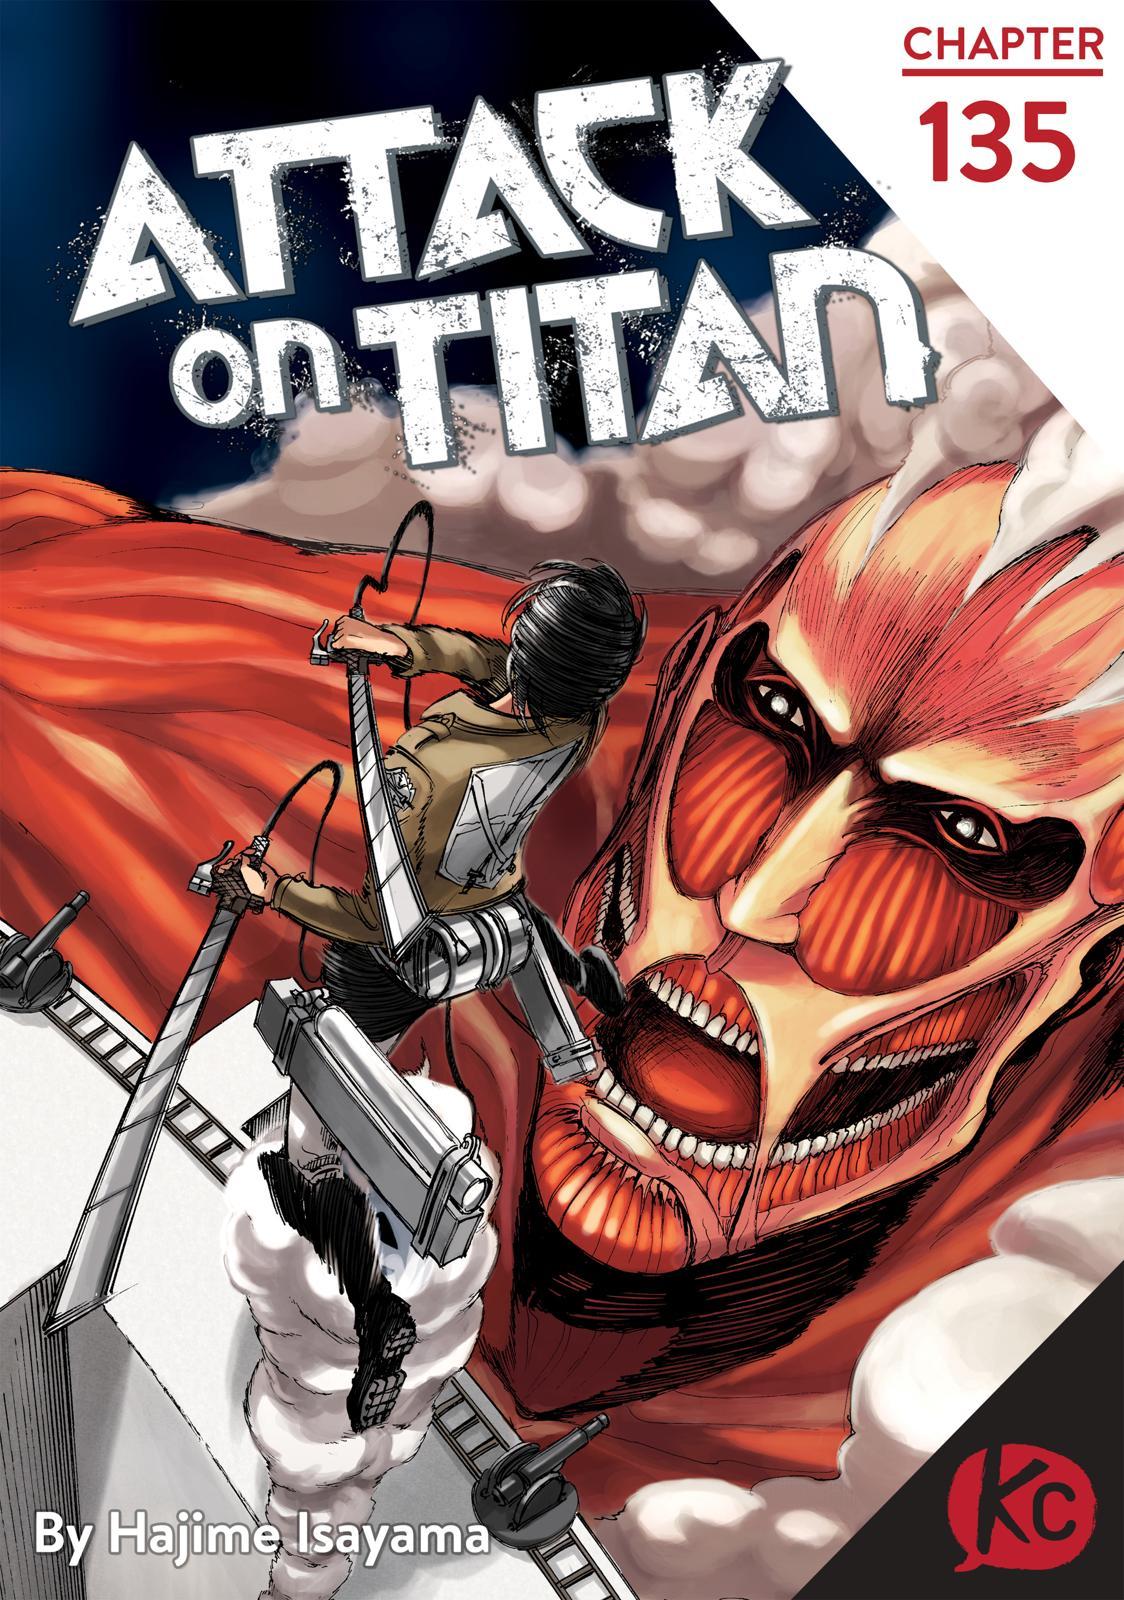 Shingeki no Kyojin (Attack on Titan) Vol. 34